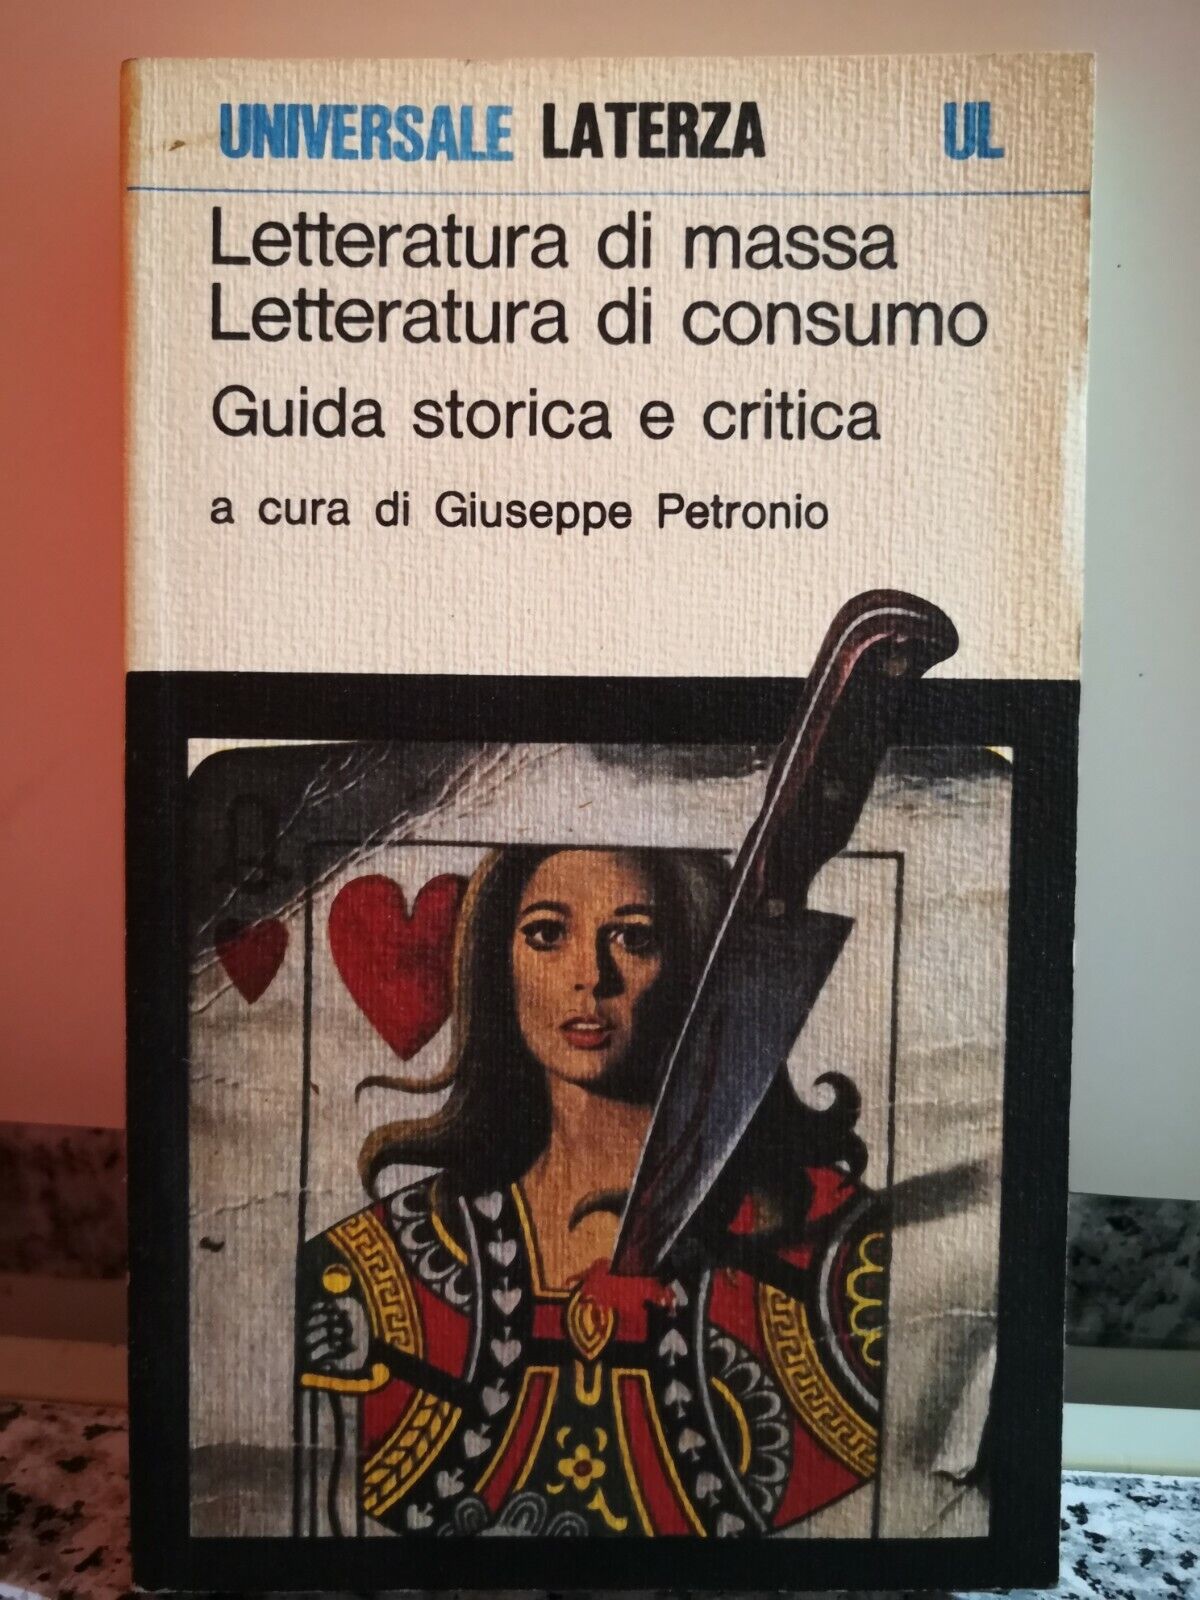  Letteratura di massa, letteratura di consumo  di A.a.v.v,  1979,  Laterza-F